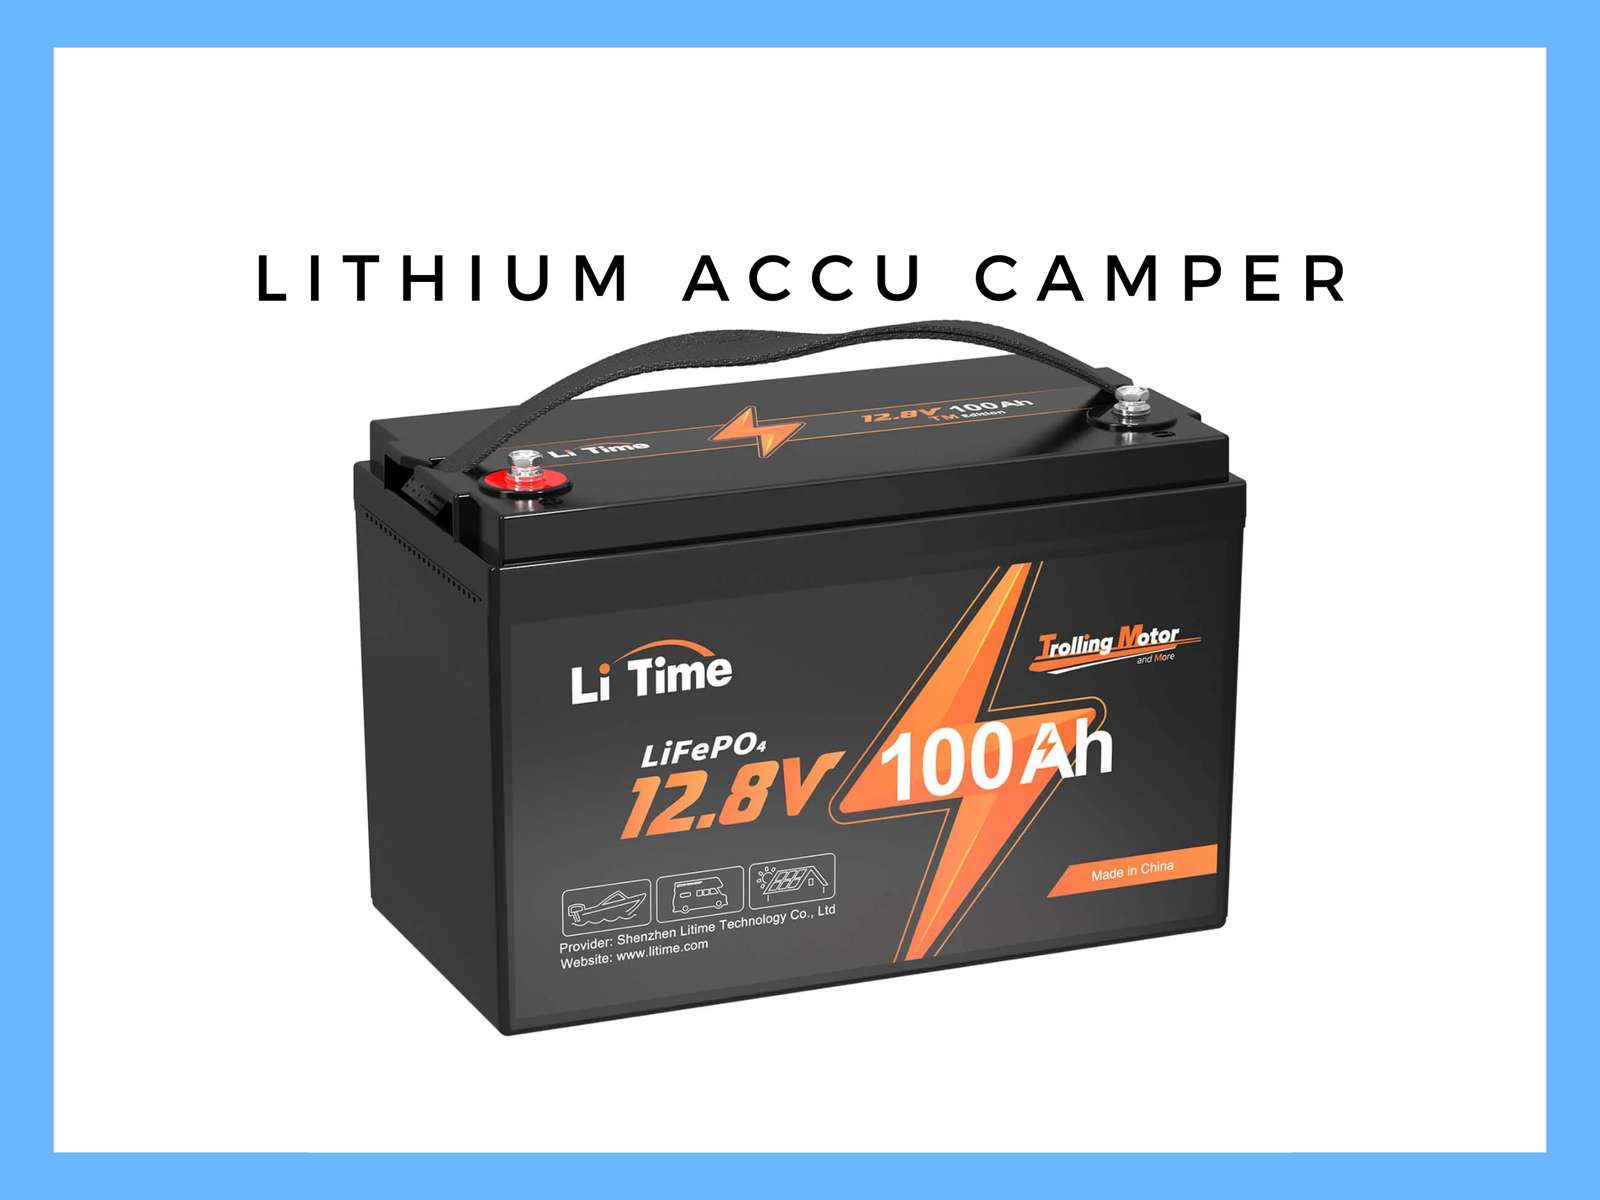 Lithium accu camper | camper-elektra.com